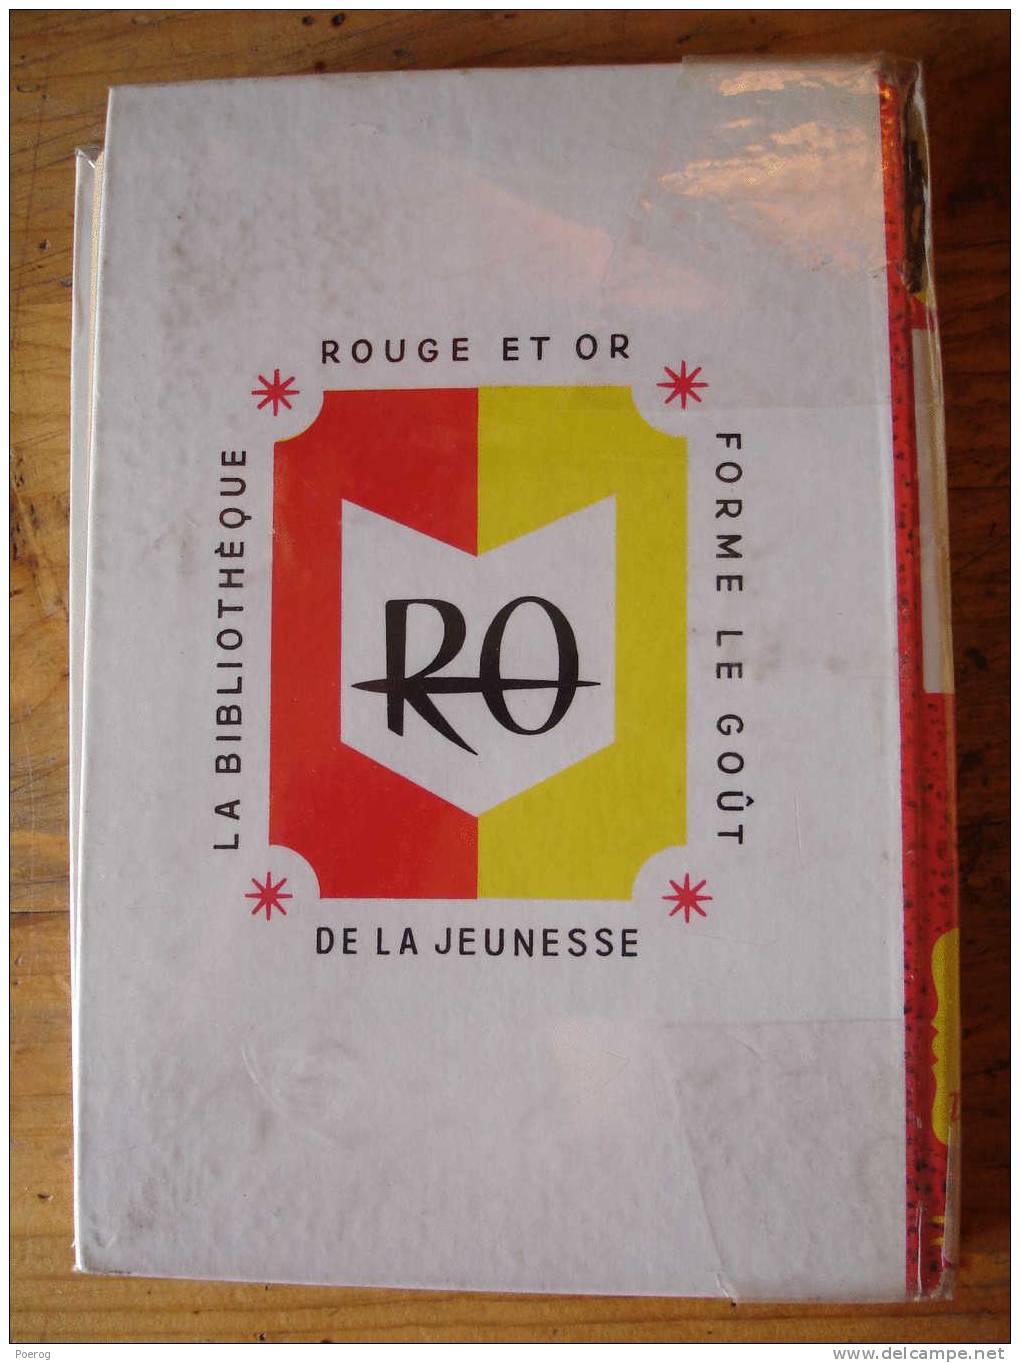 COMTESSE DE SEGUR - PAUVRE BLAISE - 1966 - ROUGE ET OR DAUPHINE N°95 - ILLUSTRATIONS LUCE LAGARDE - Bibliothèque Rouge Et Or